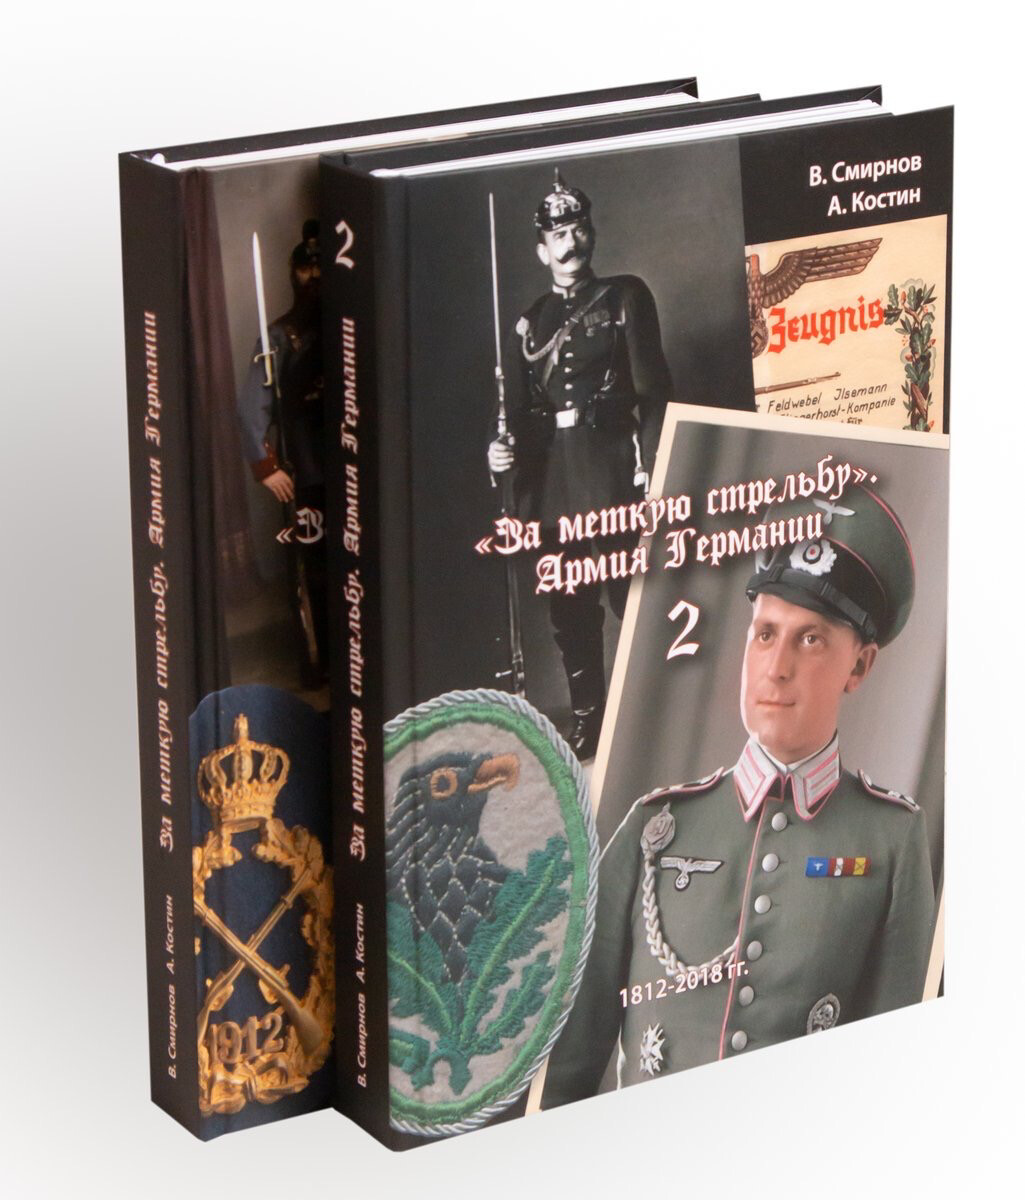 Комплект из двух книг "За меткую стрельбу" Армия Германии